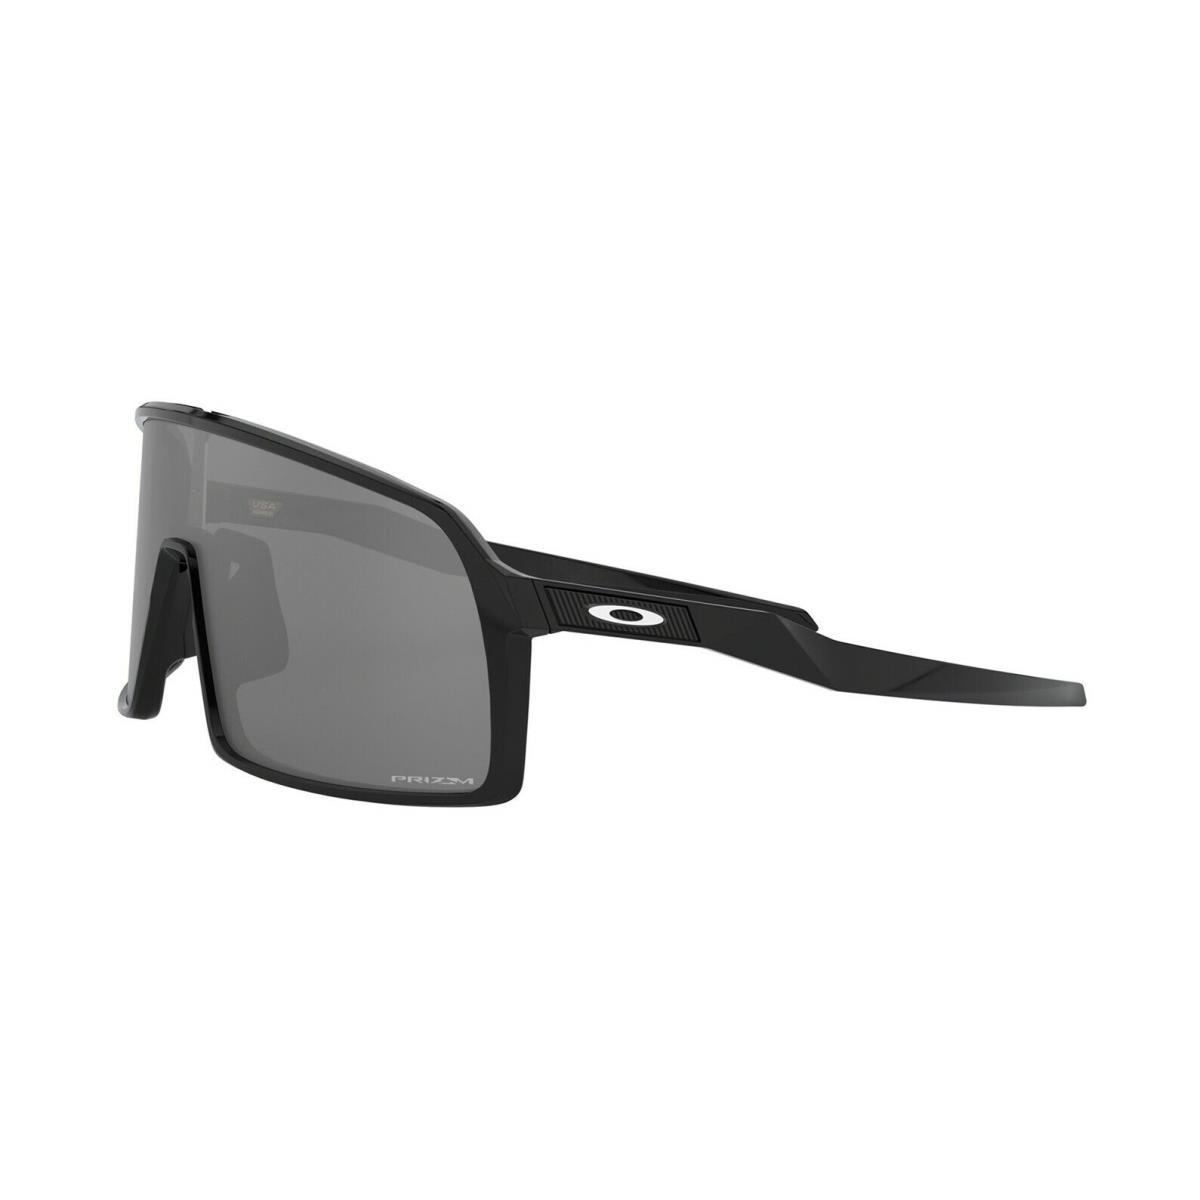 Oakley sunglasses  - Black Frame, Black Lens